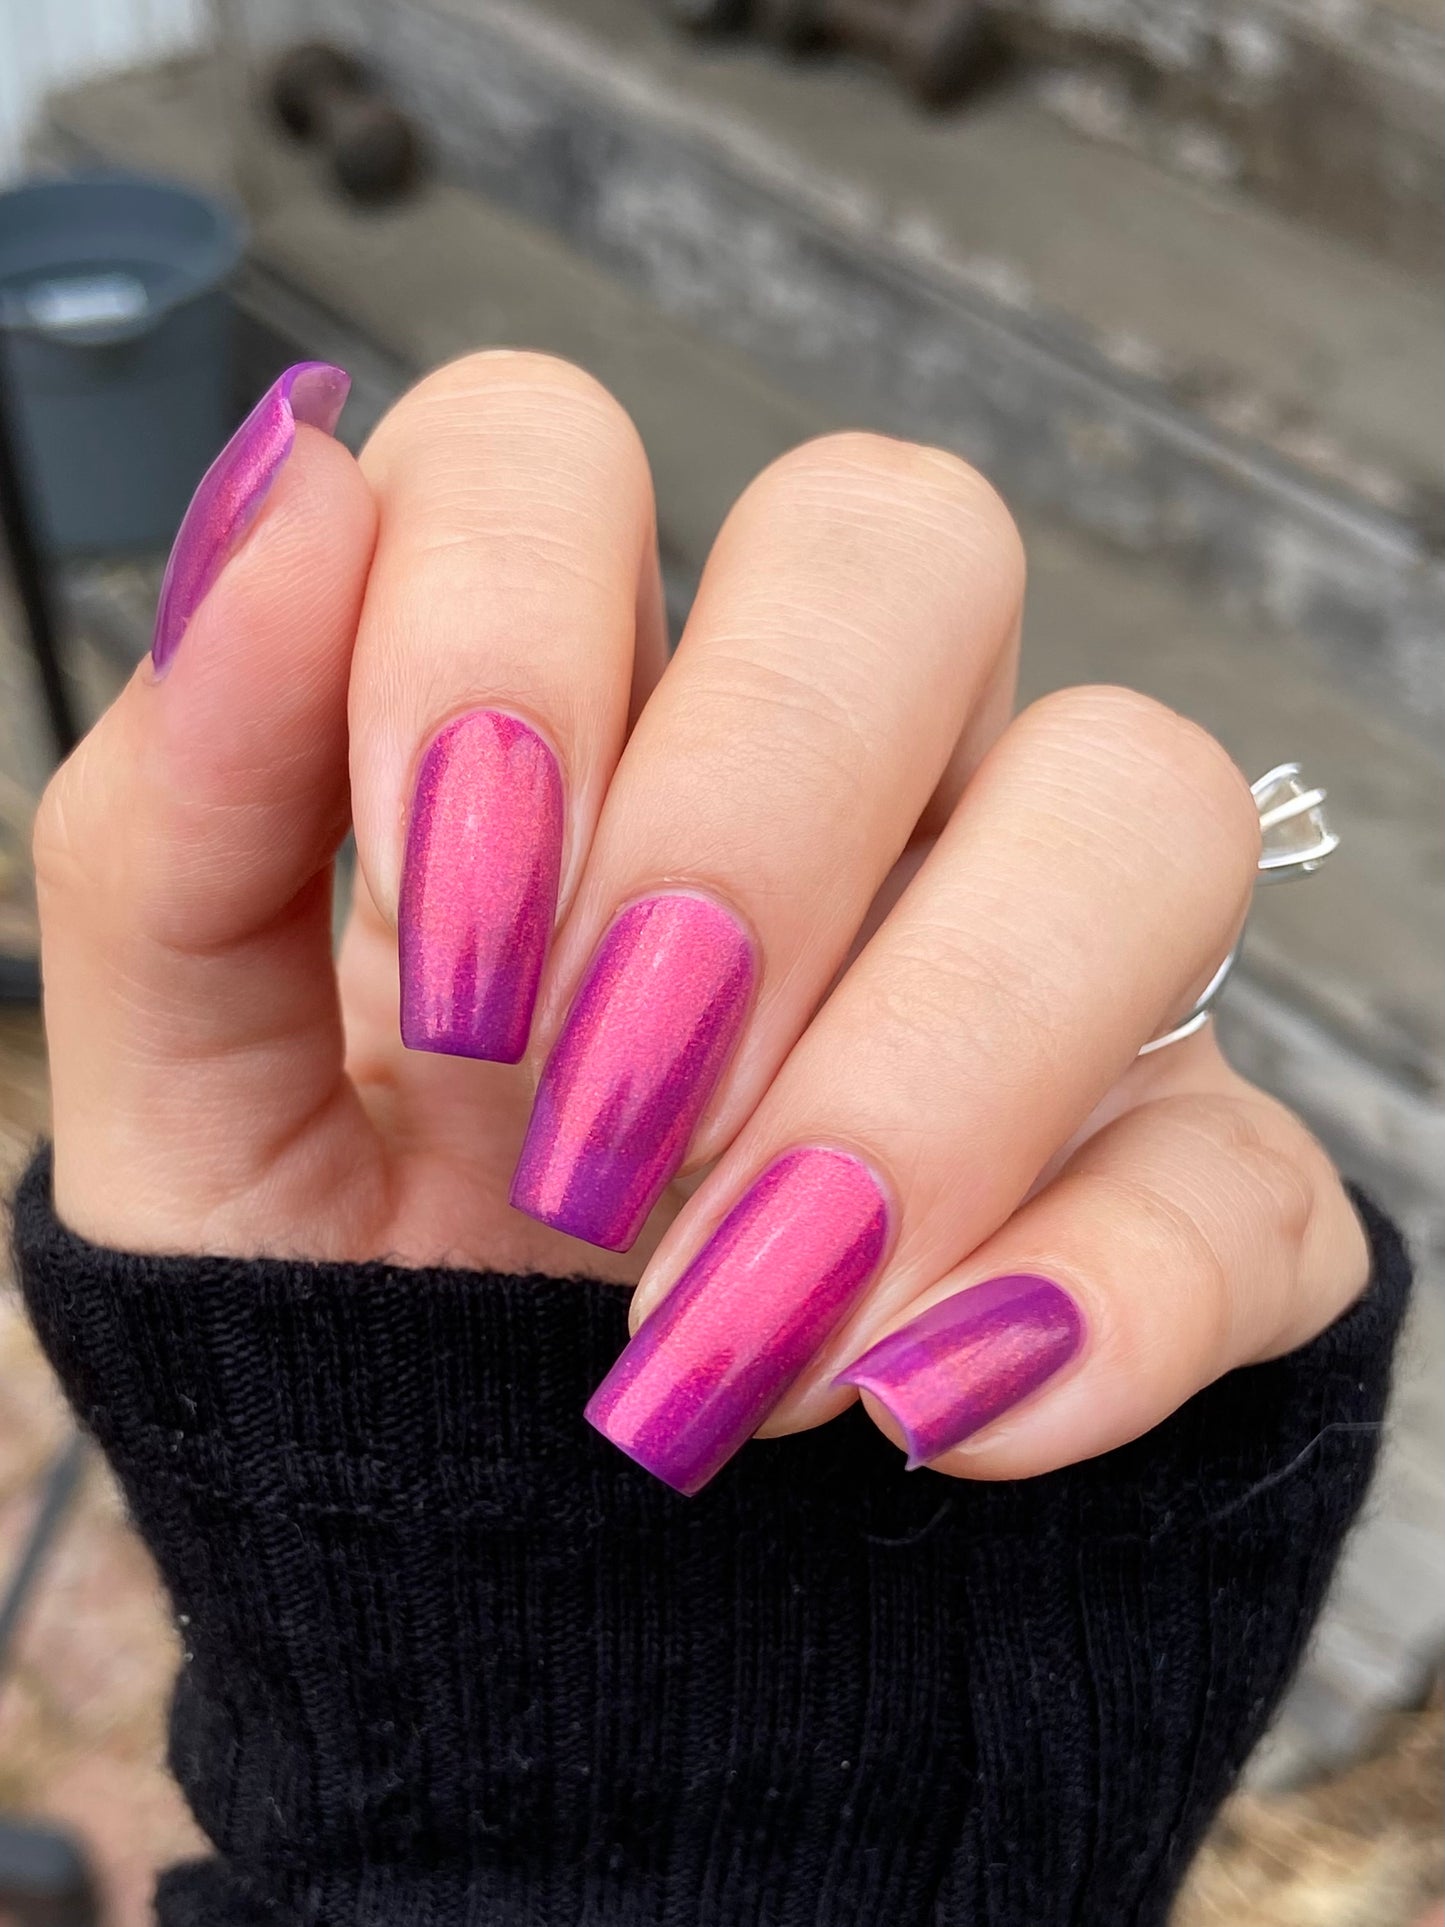 Dark Eyed Blossom - Purple Nail Polish - Shimmer Nail Polish - SHIMMAHS Facebook Custom